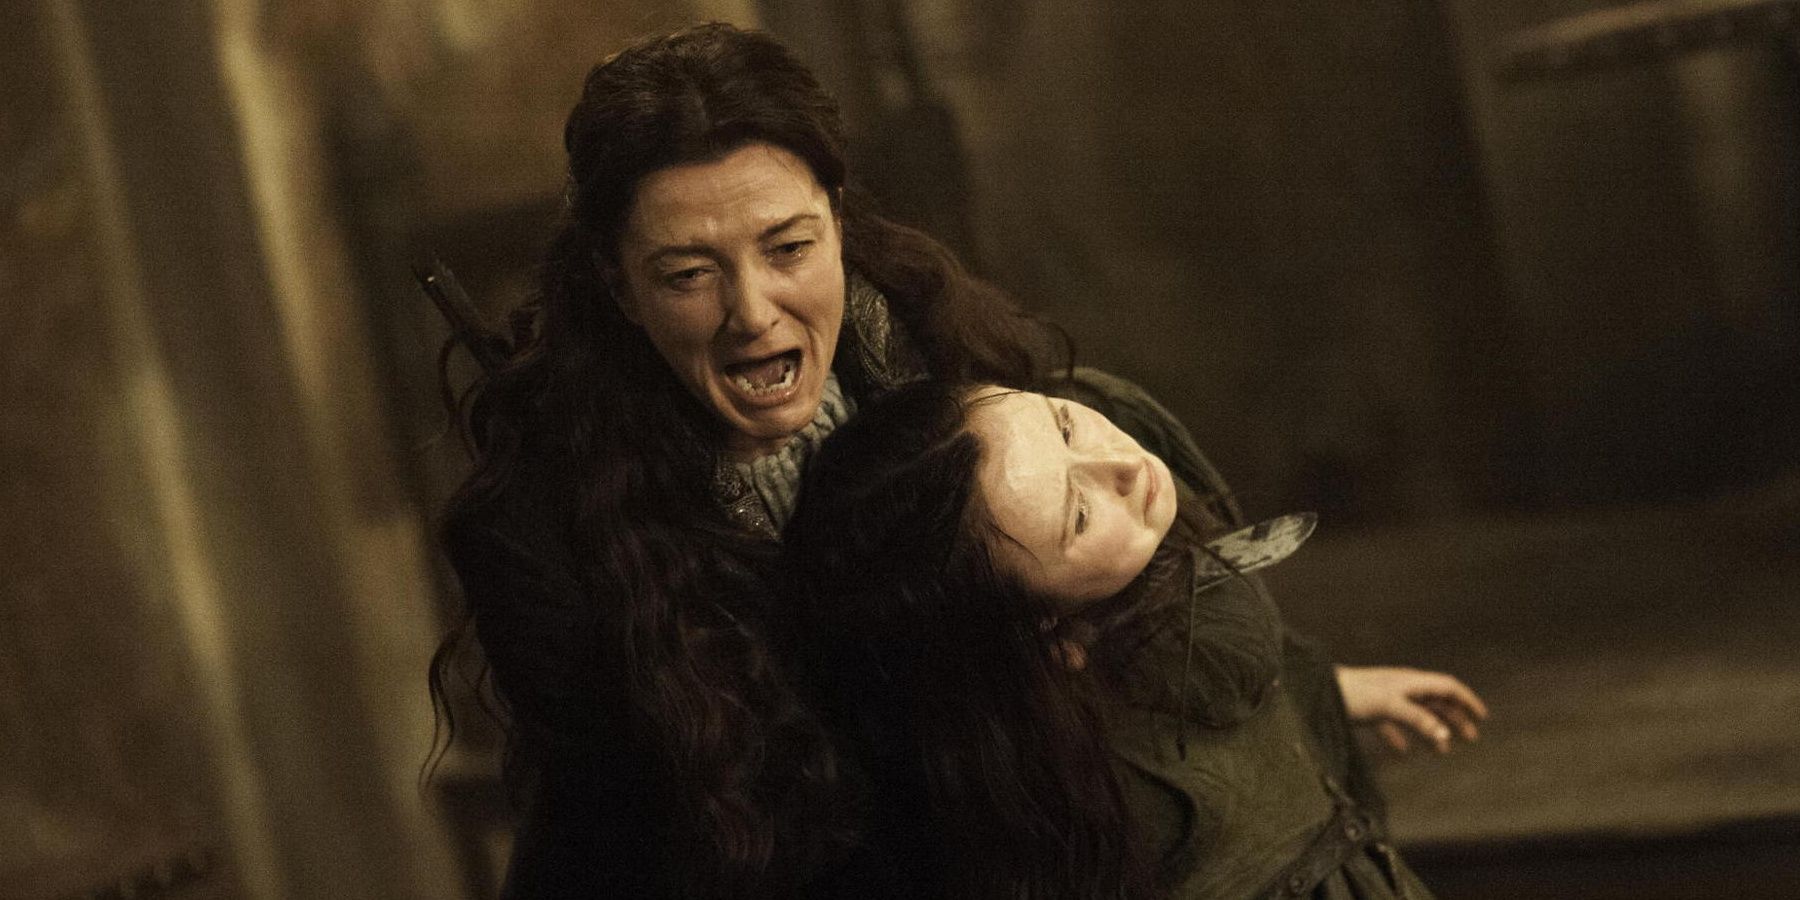 Catelyn Stark screaming as her son Robb dies